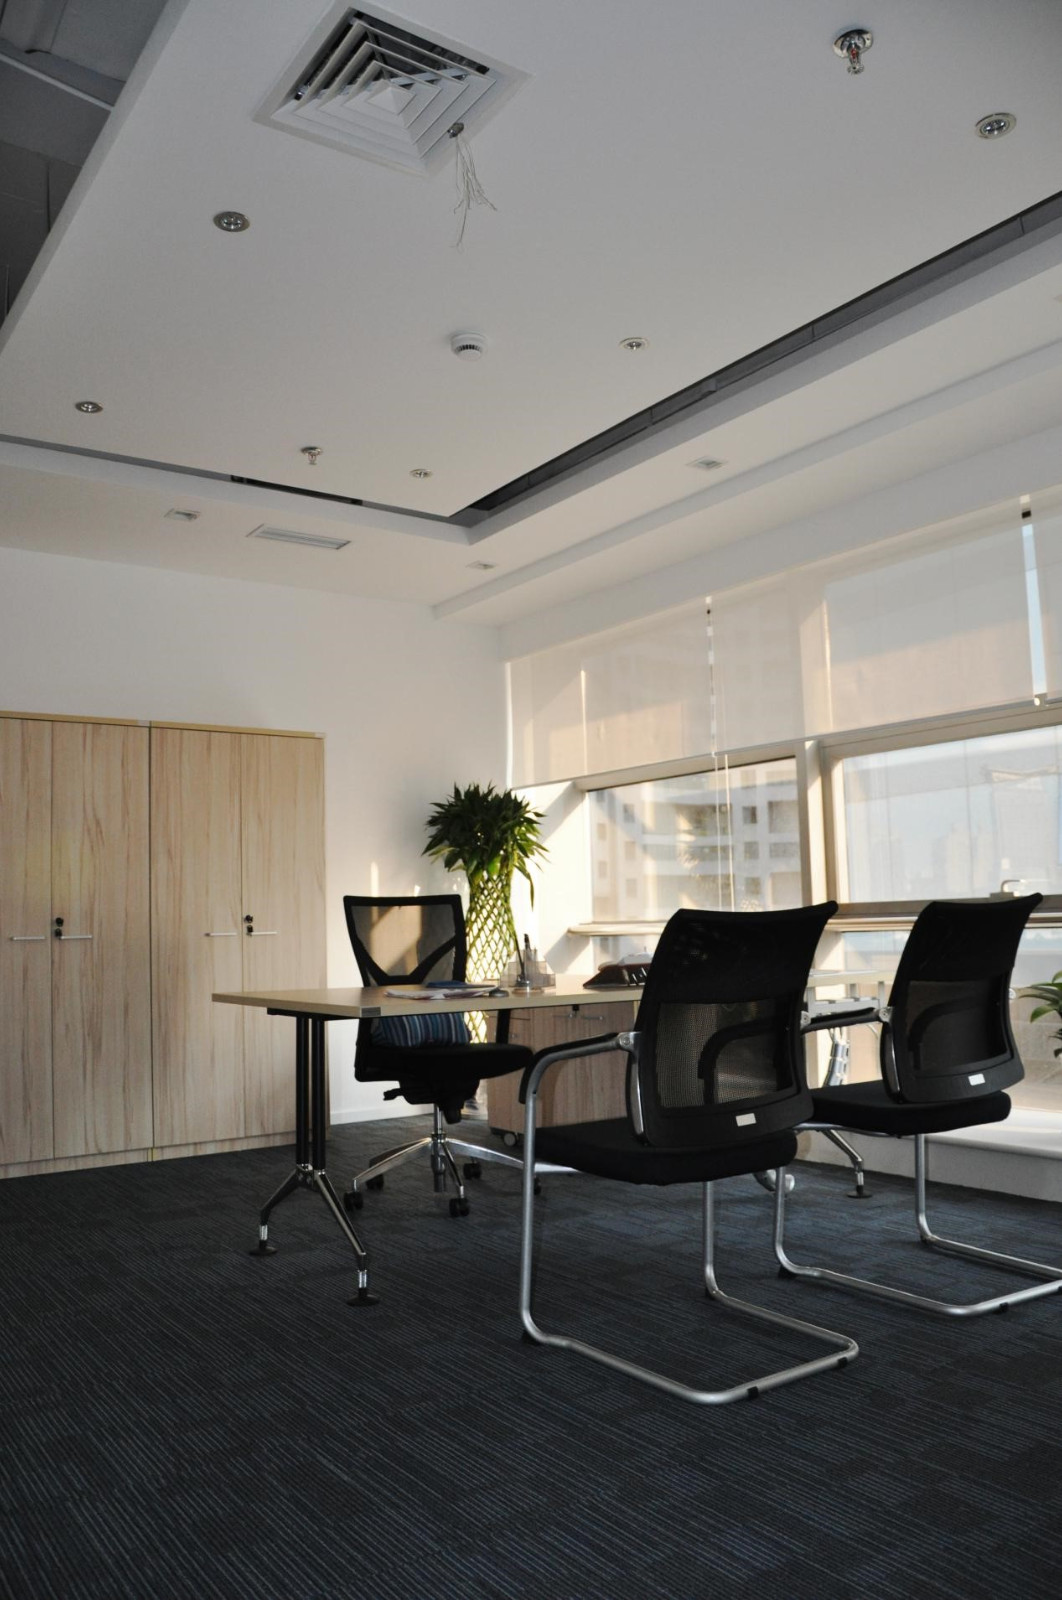 独立办公室的设计保持去繁就简,直线条的吊顶与通顶的落地玻璃门窗